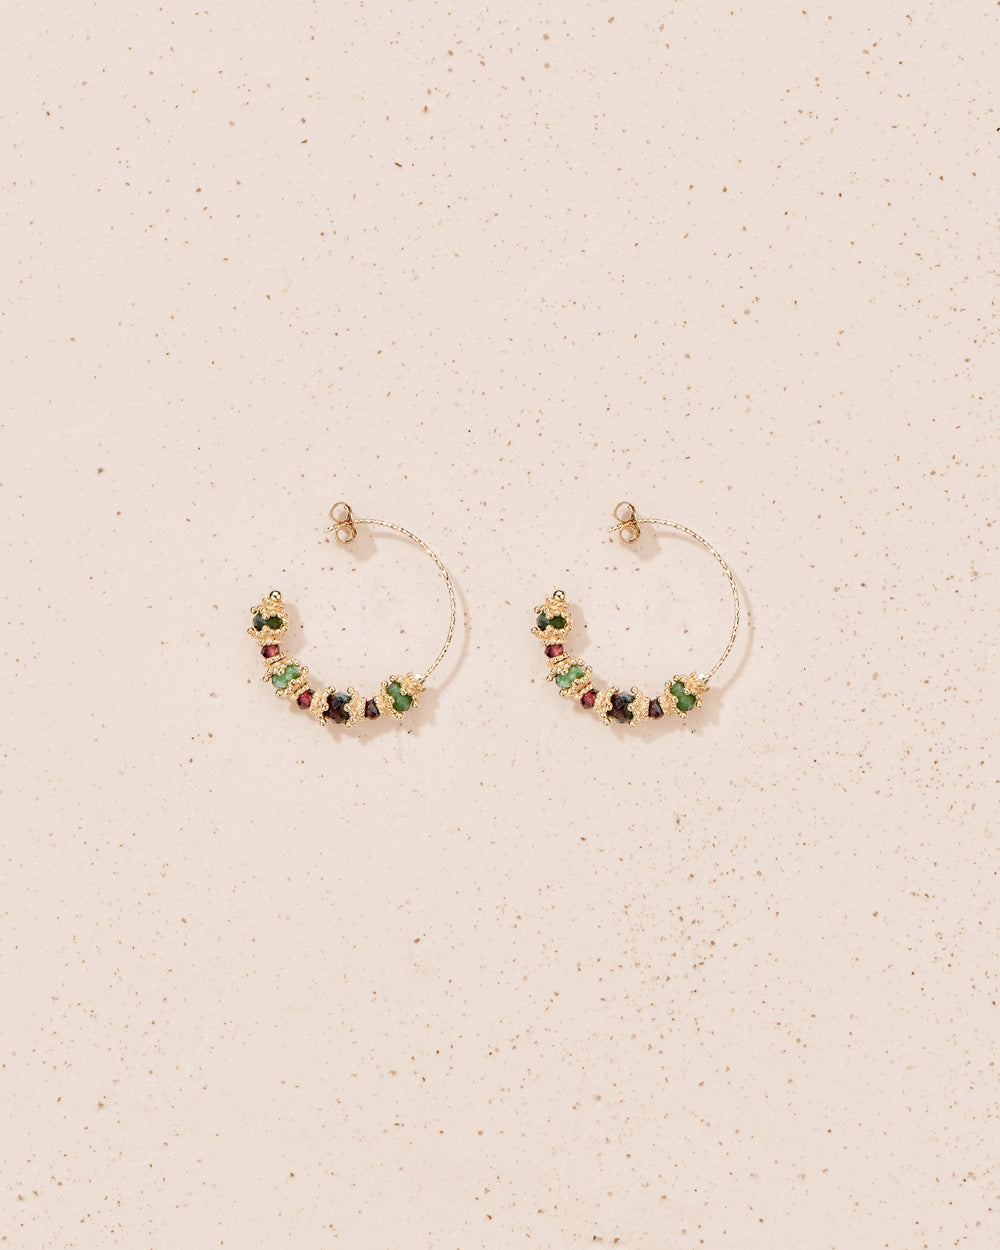 Sriphala earrings